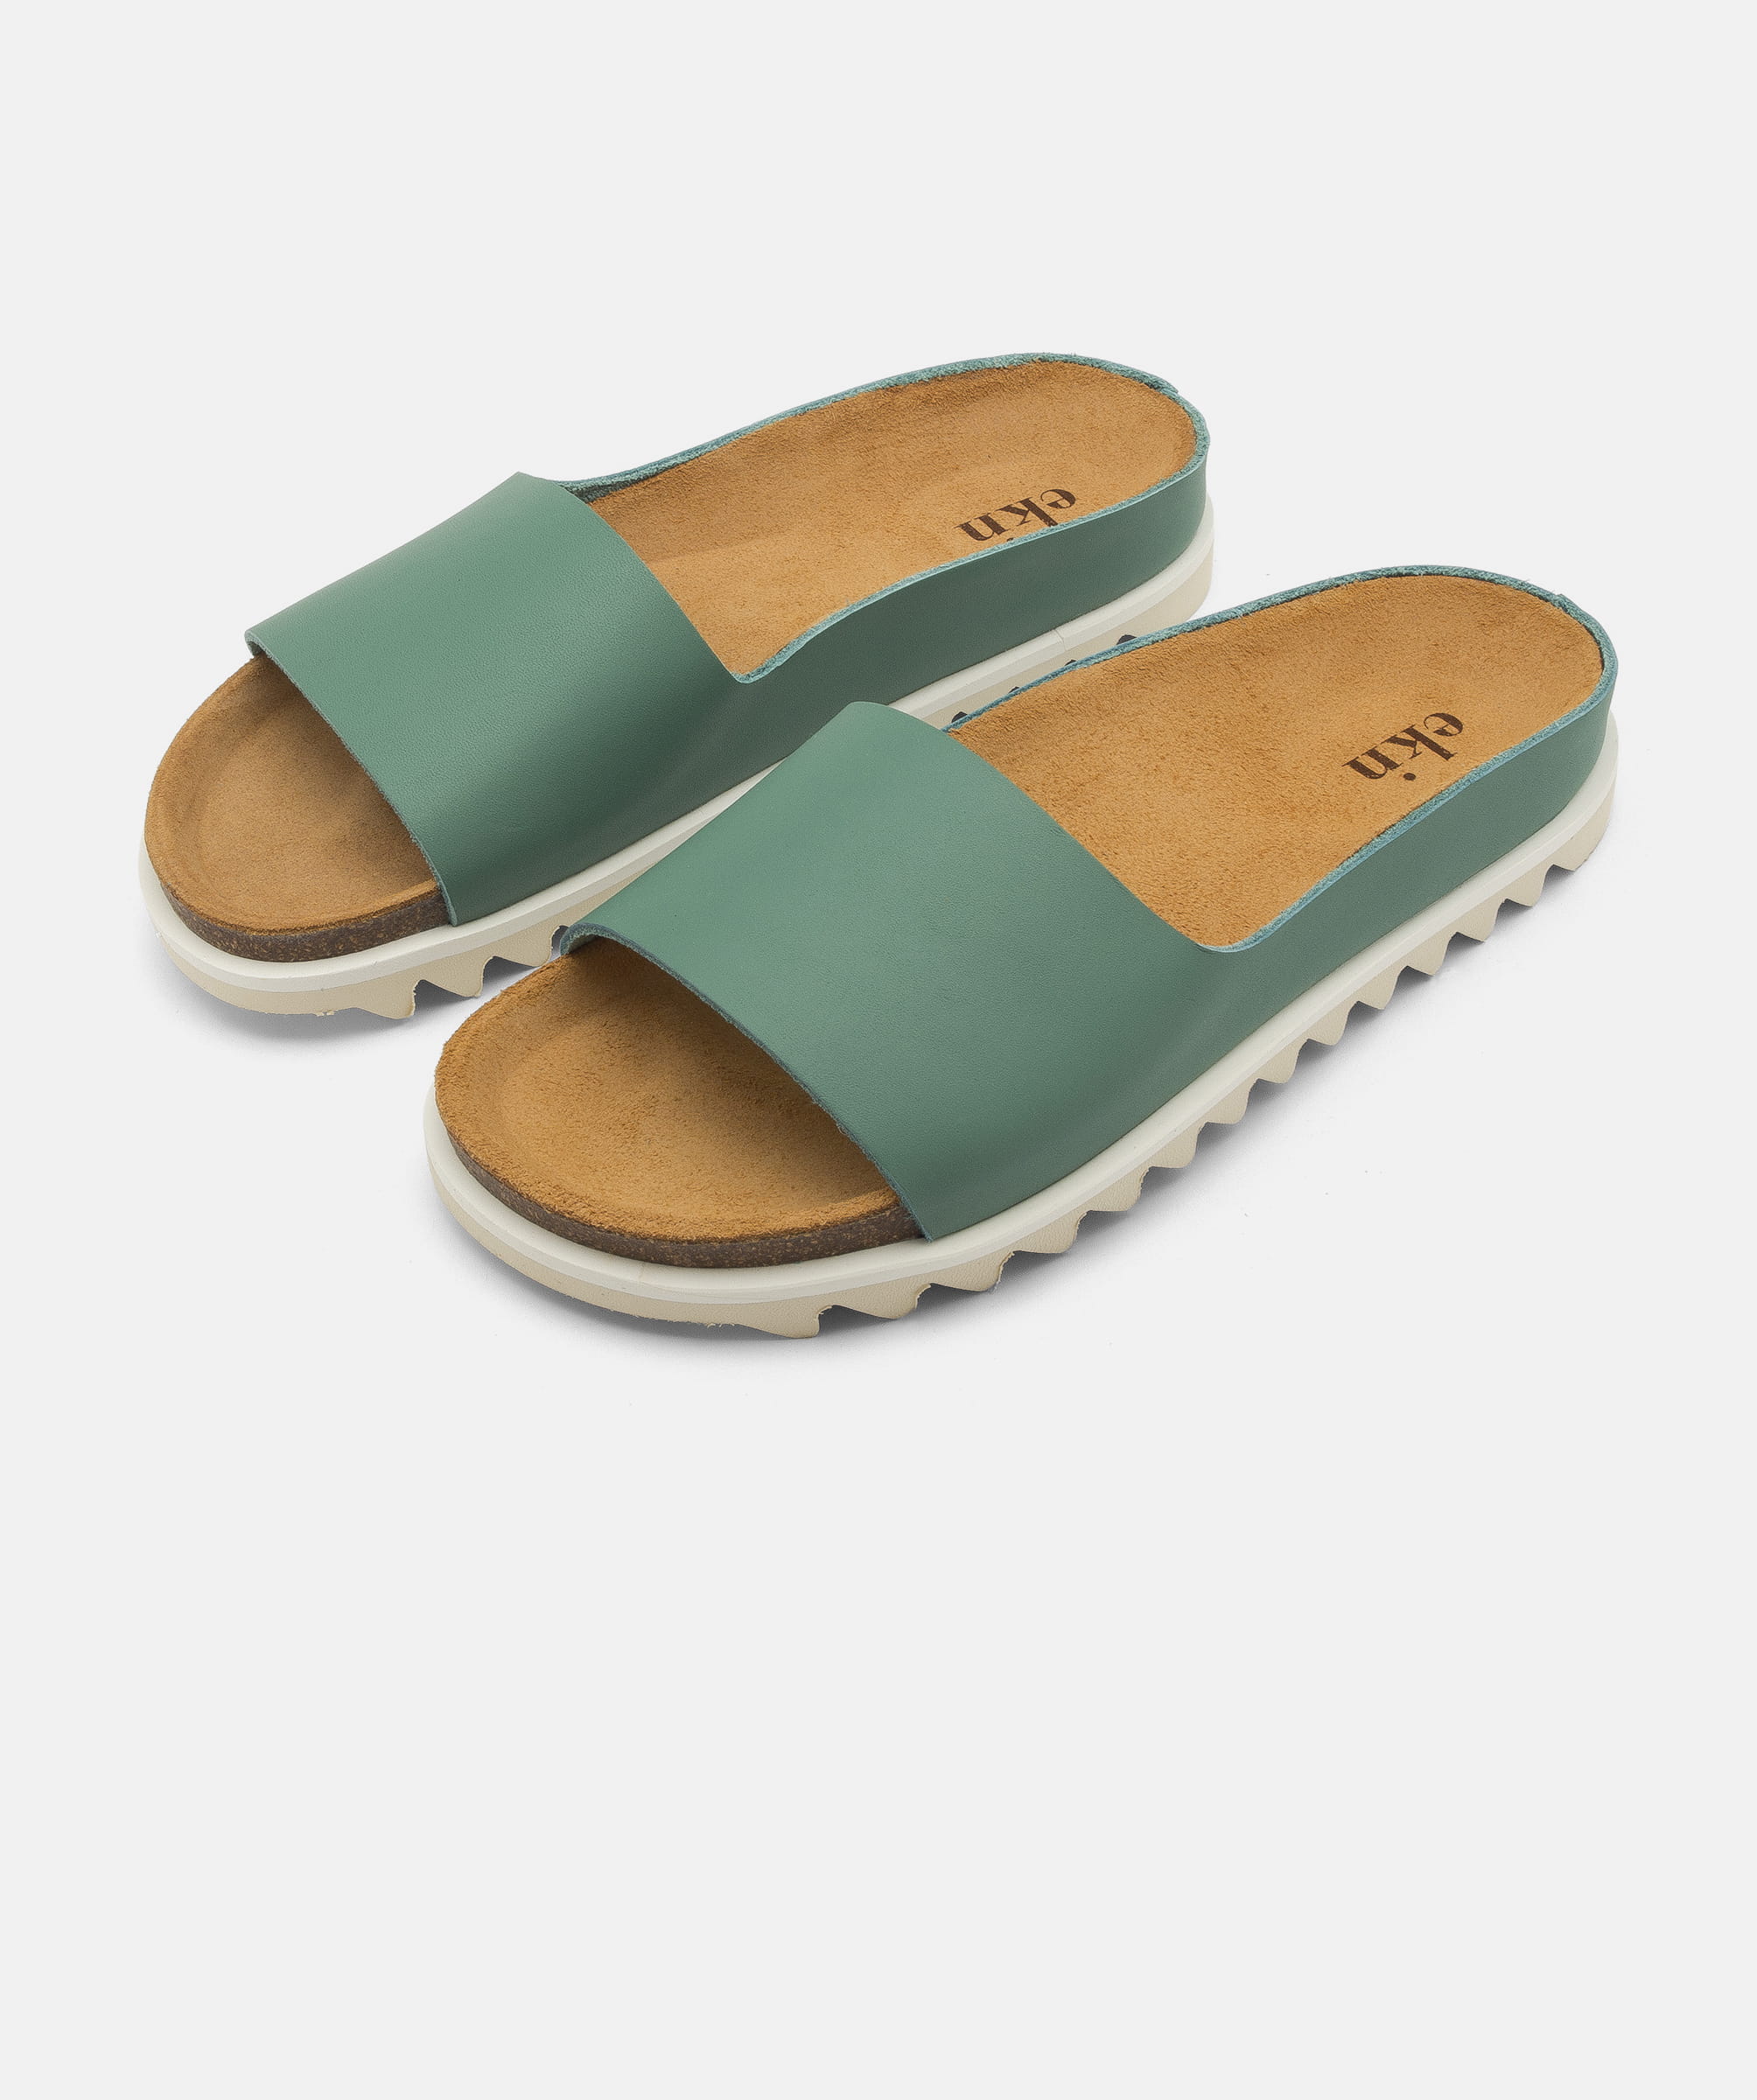 Penneven midt i intetsteds flyde Palm Sandal / Alga | Sandal | Style | Men | ekn footwear